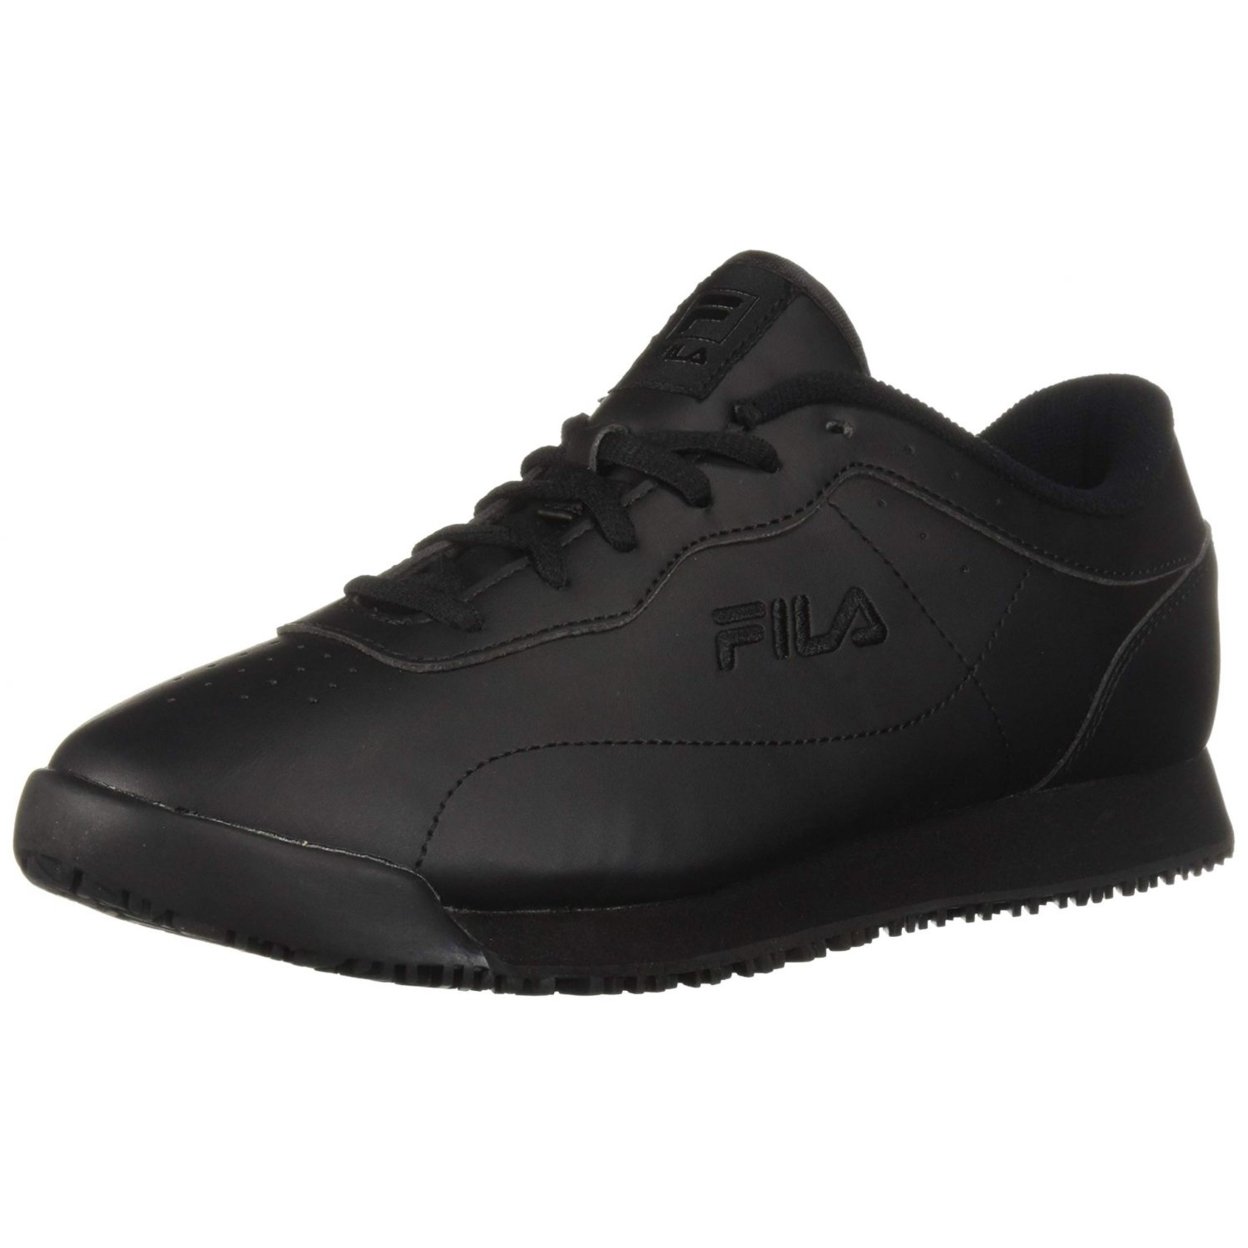 Fila Memory Viable Sr Wide Womens Shoes Size 10, Color: Black 0 BLK/BLK/BLK - BLACK, 10